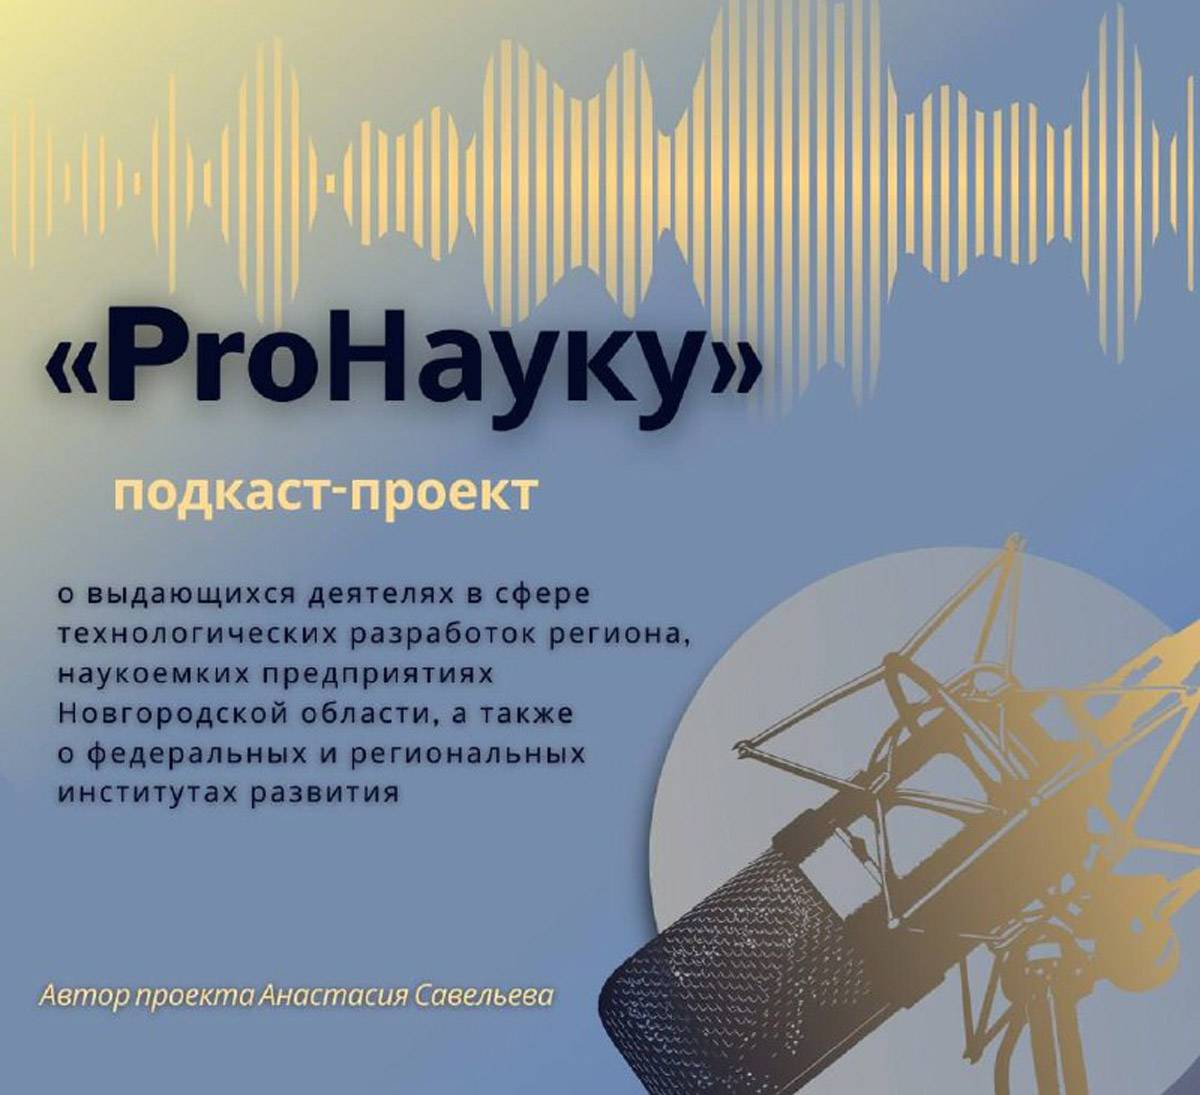 Подкаст-проект «ProНауку» реализуется в рамках Десятилетия науки и технологий в России при областной грантовой поддержке от Дома молодежи